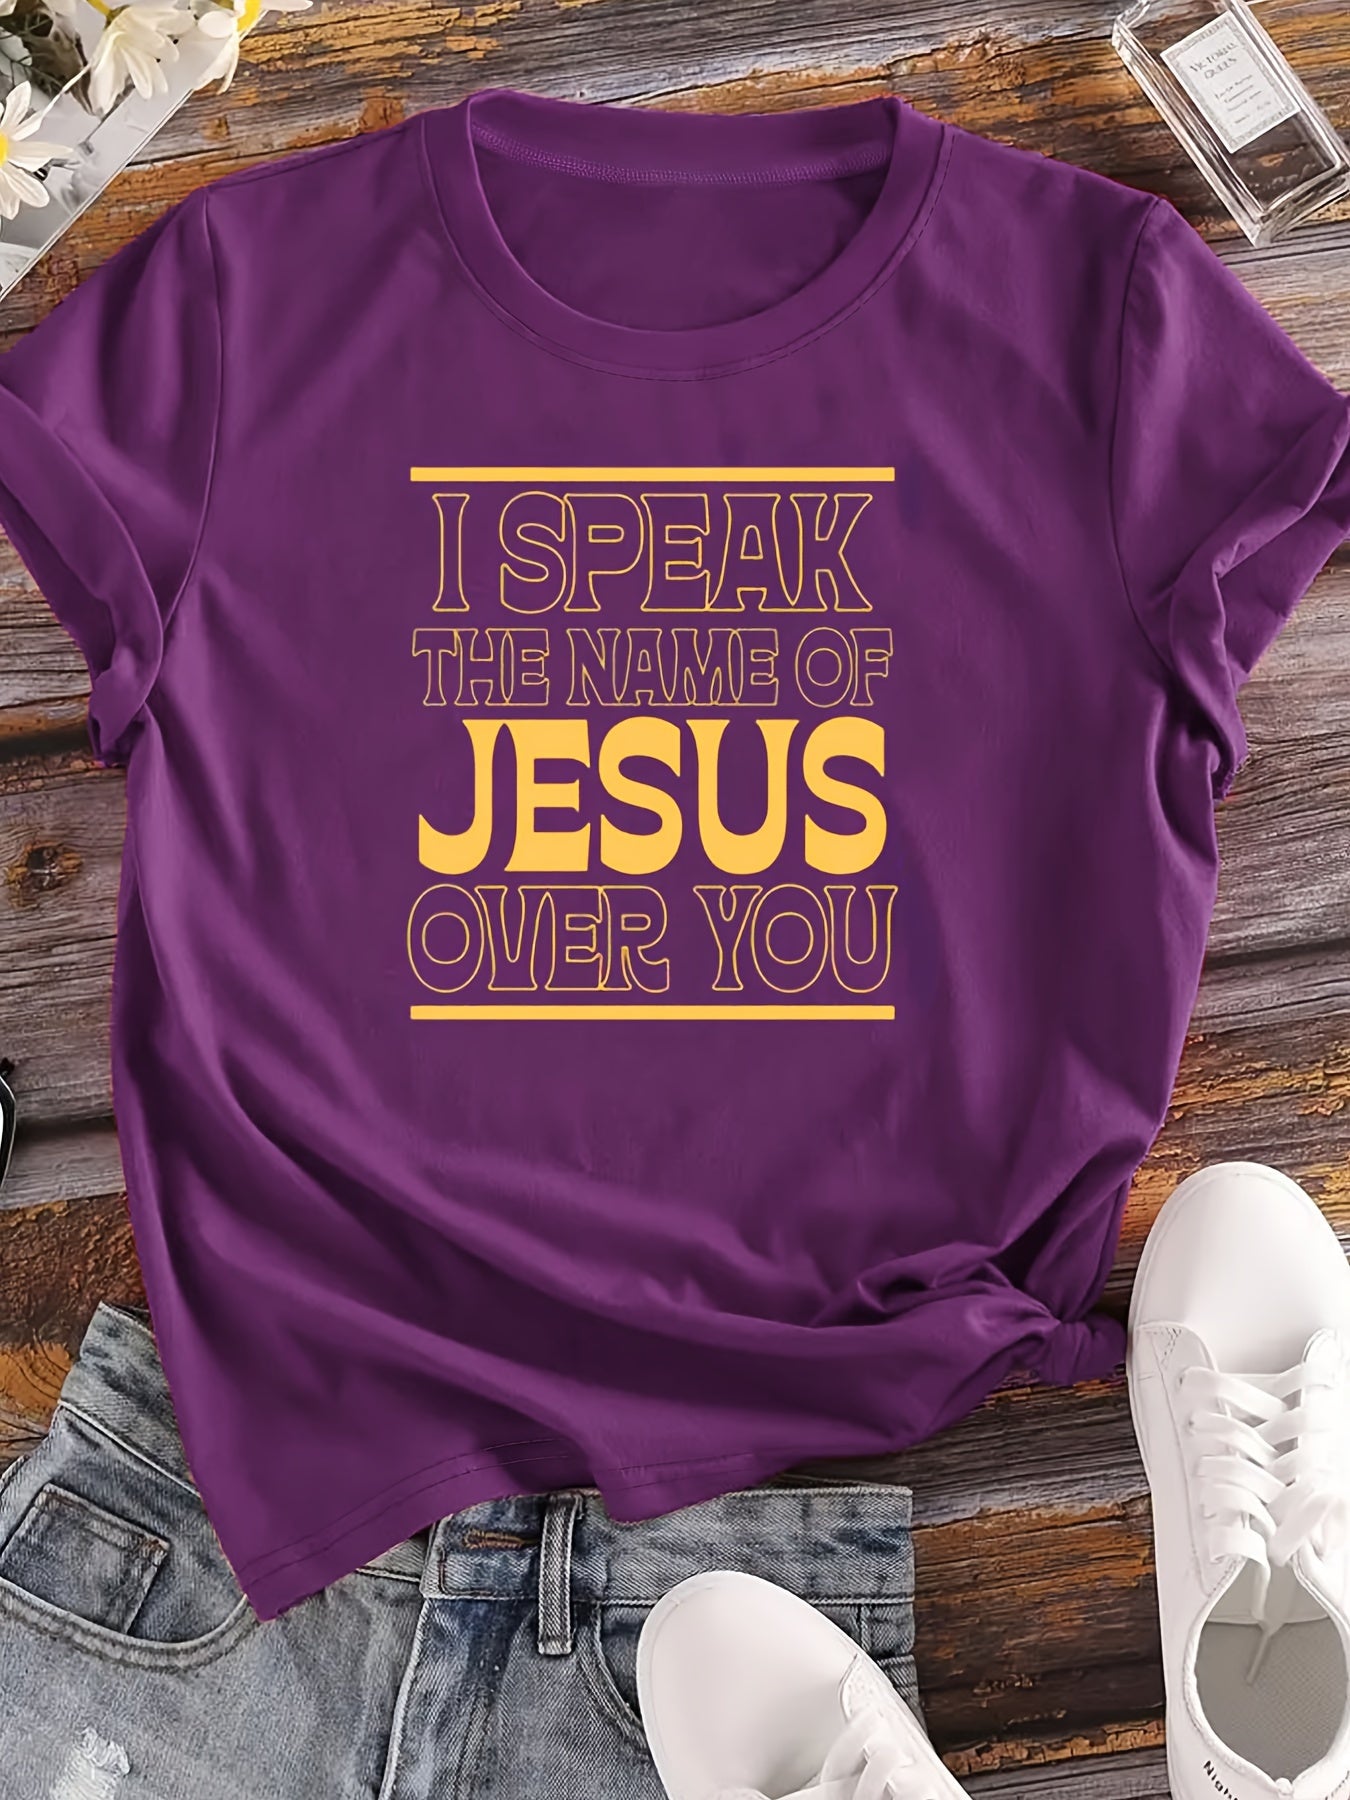 I Speak The Name Of Jesus Over You Women's Christian T-shirt claimedbygoddesigns